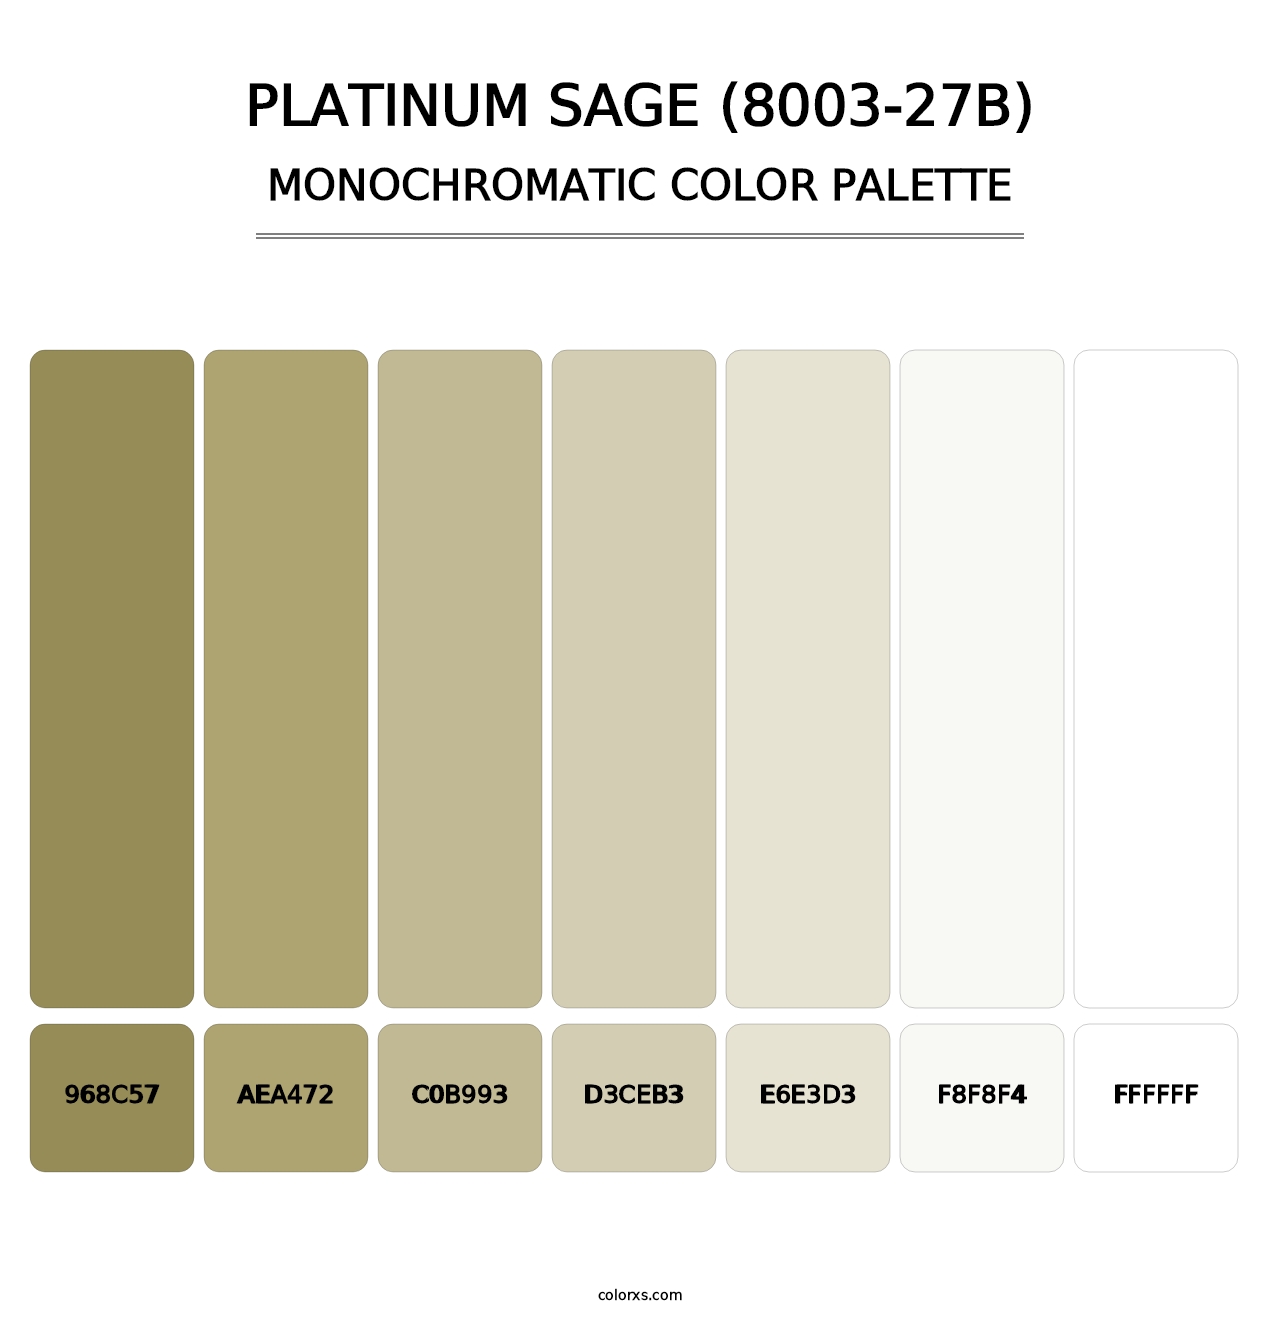 Platinum Sage (8003-27B) - Monochromatic Color Palette